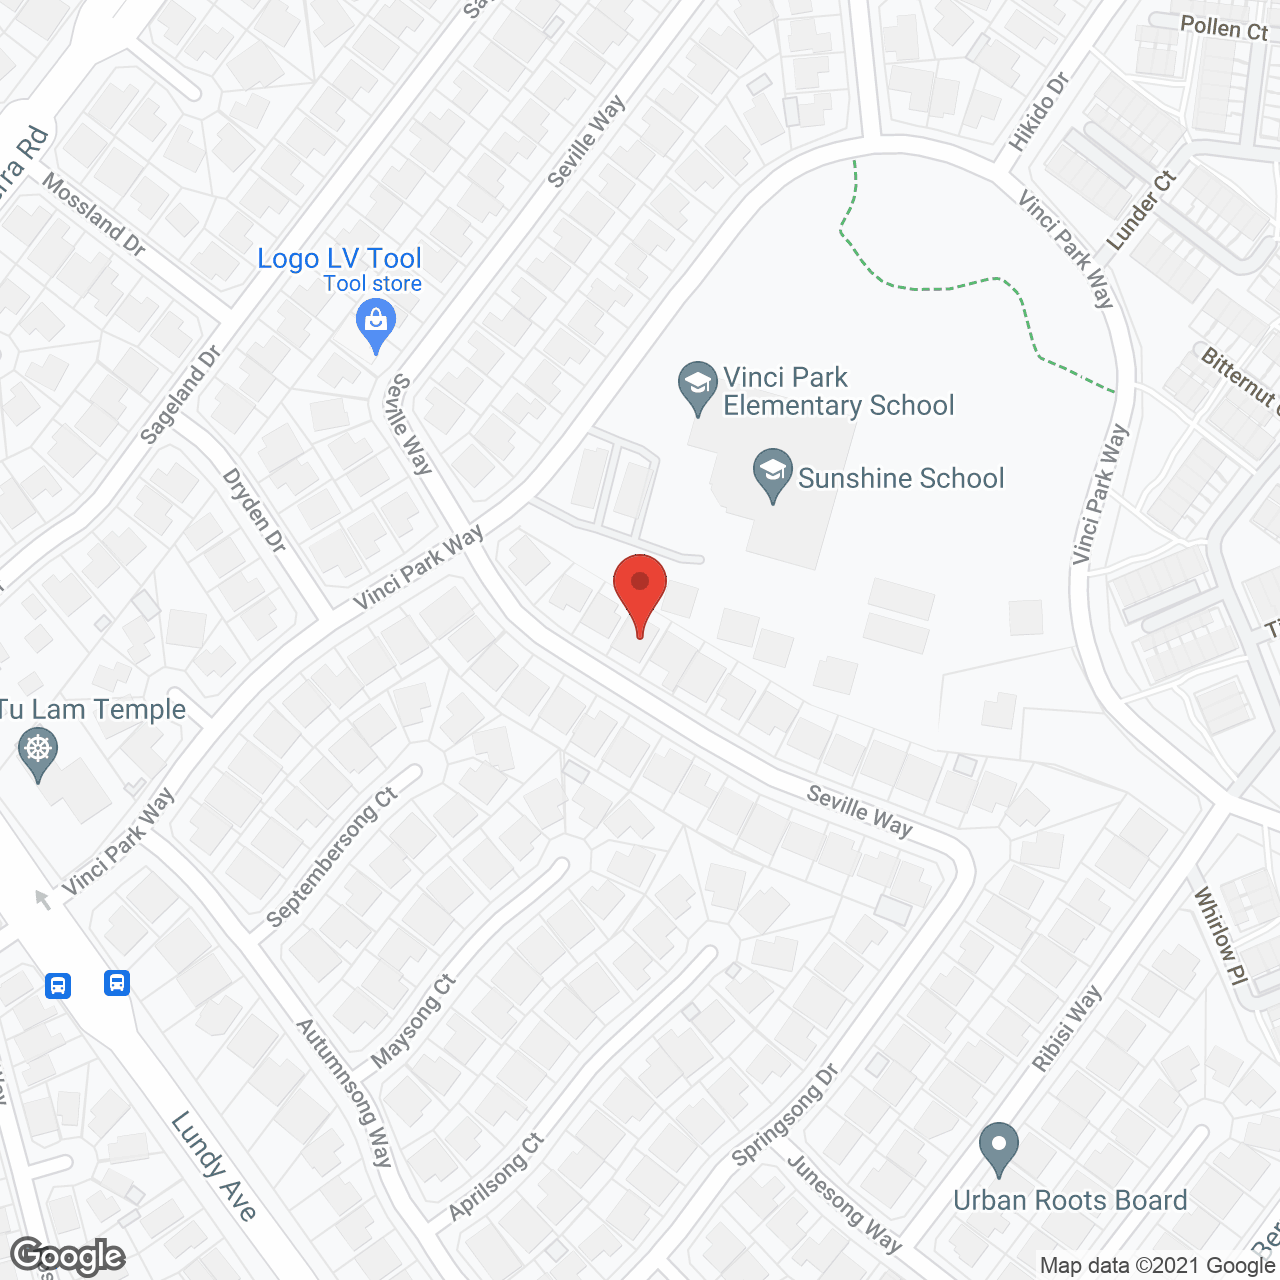 Seville Gardens in google map